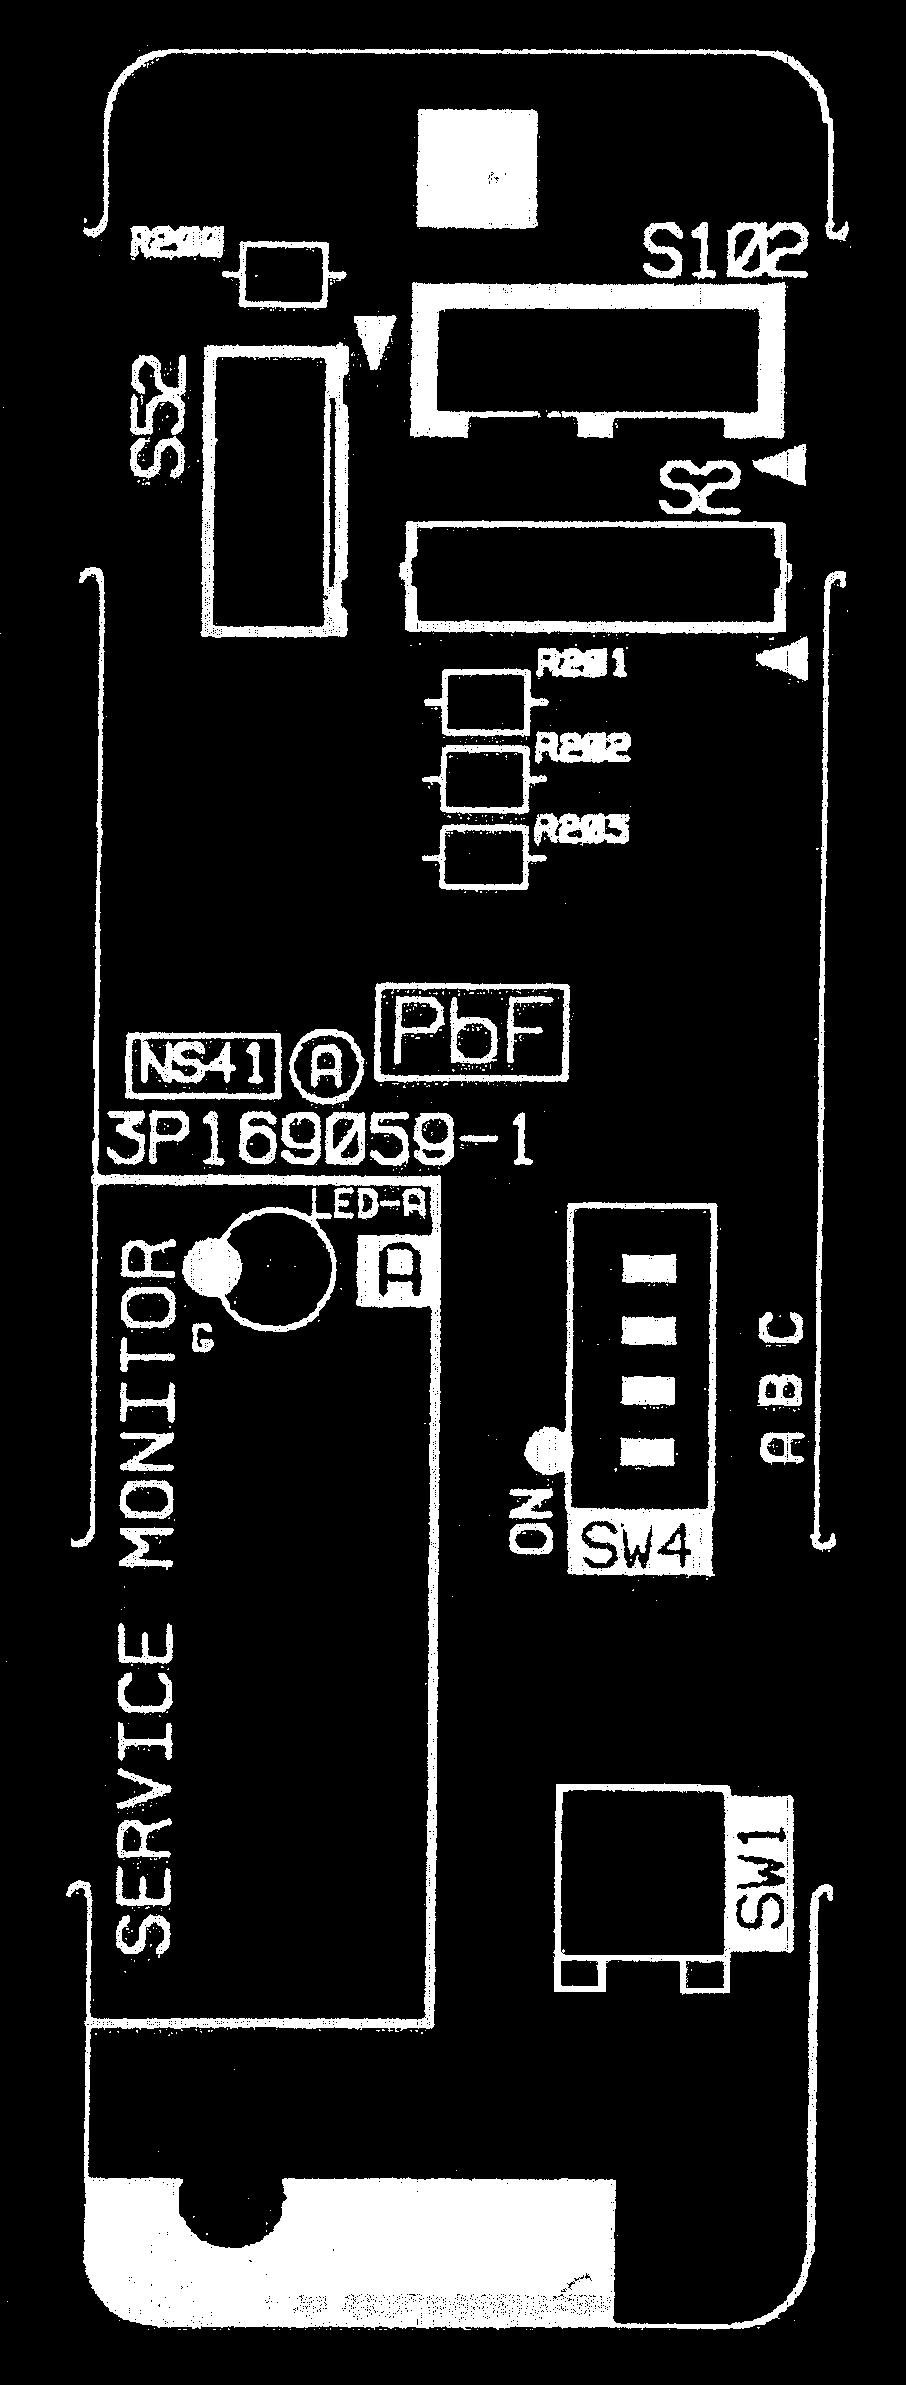 2P230094-2 PCB (2): Service Monitor PCB LED A S52 SW1 SW4-B SW4-C S102